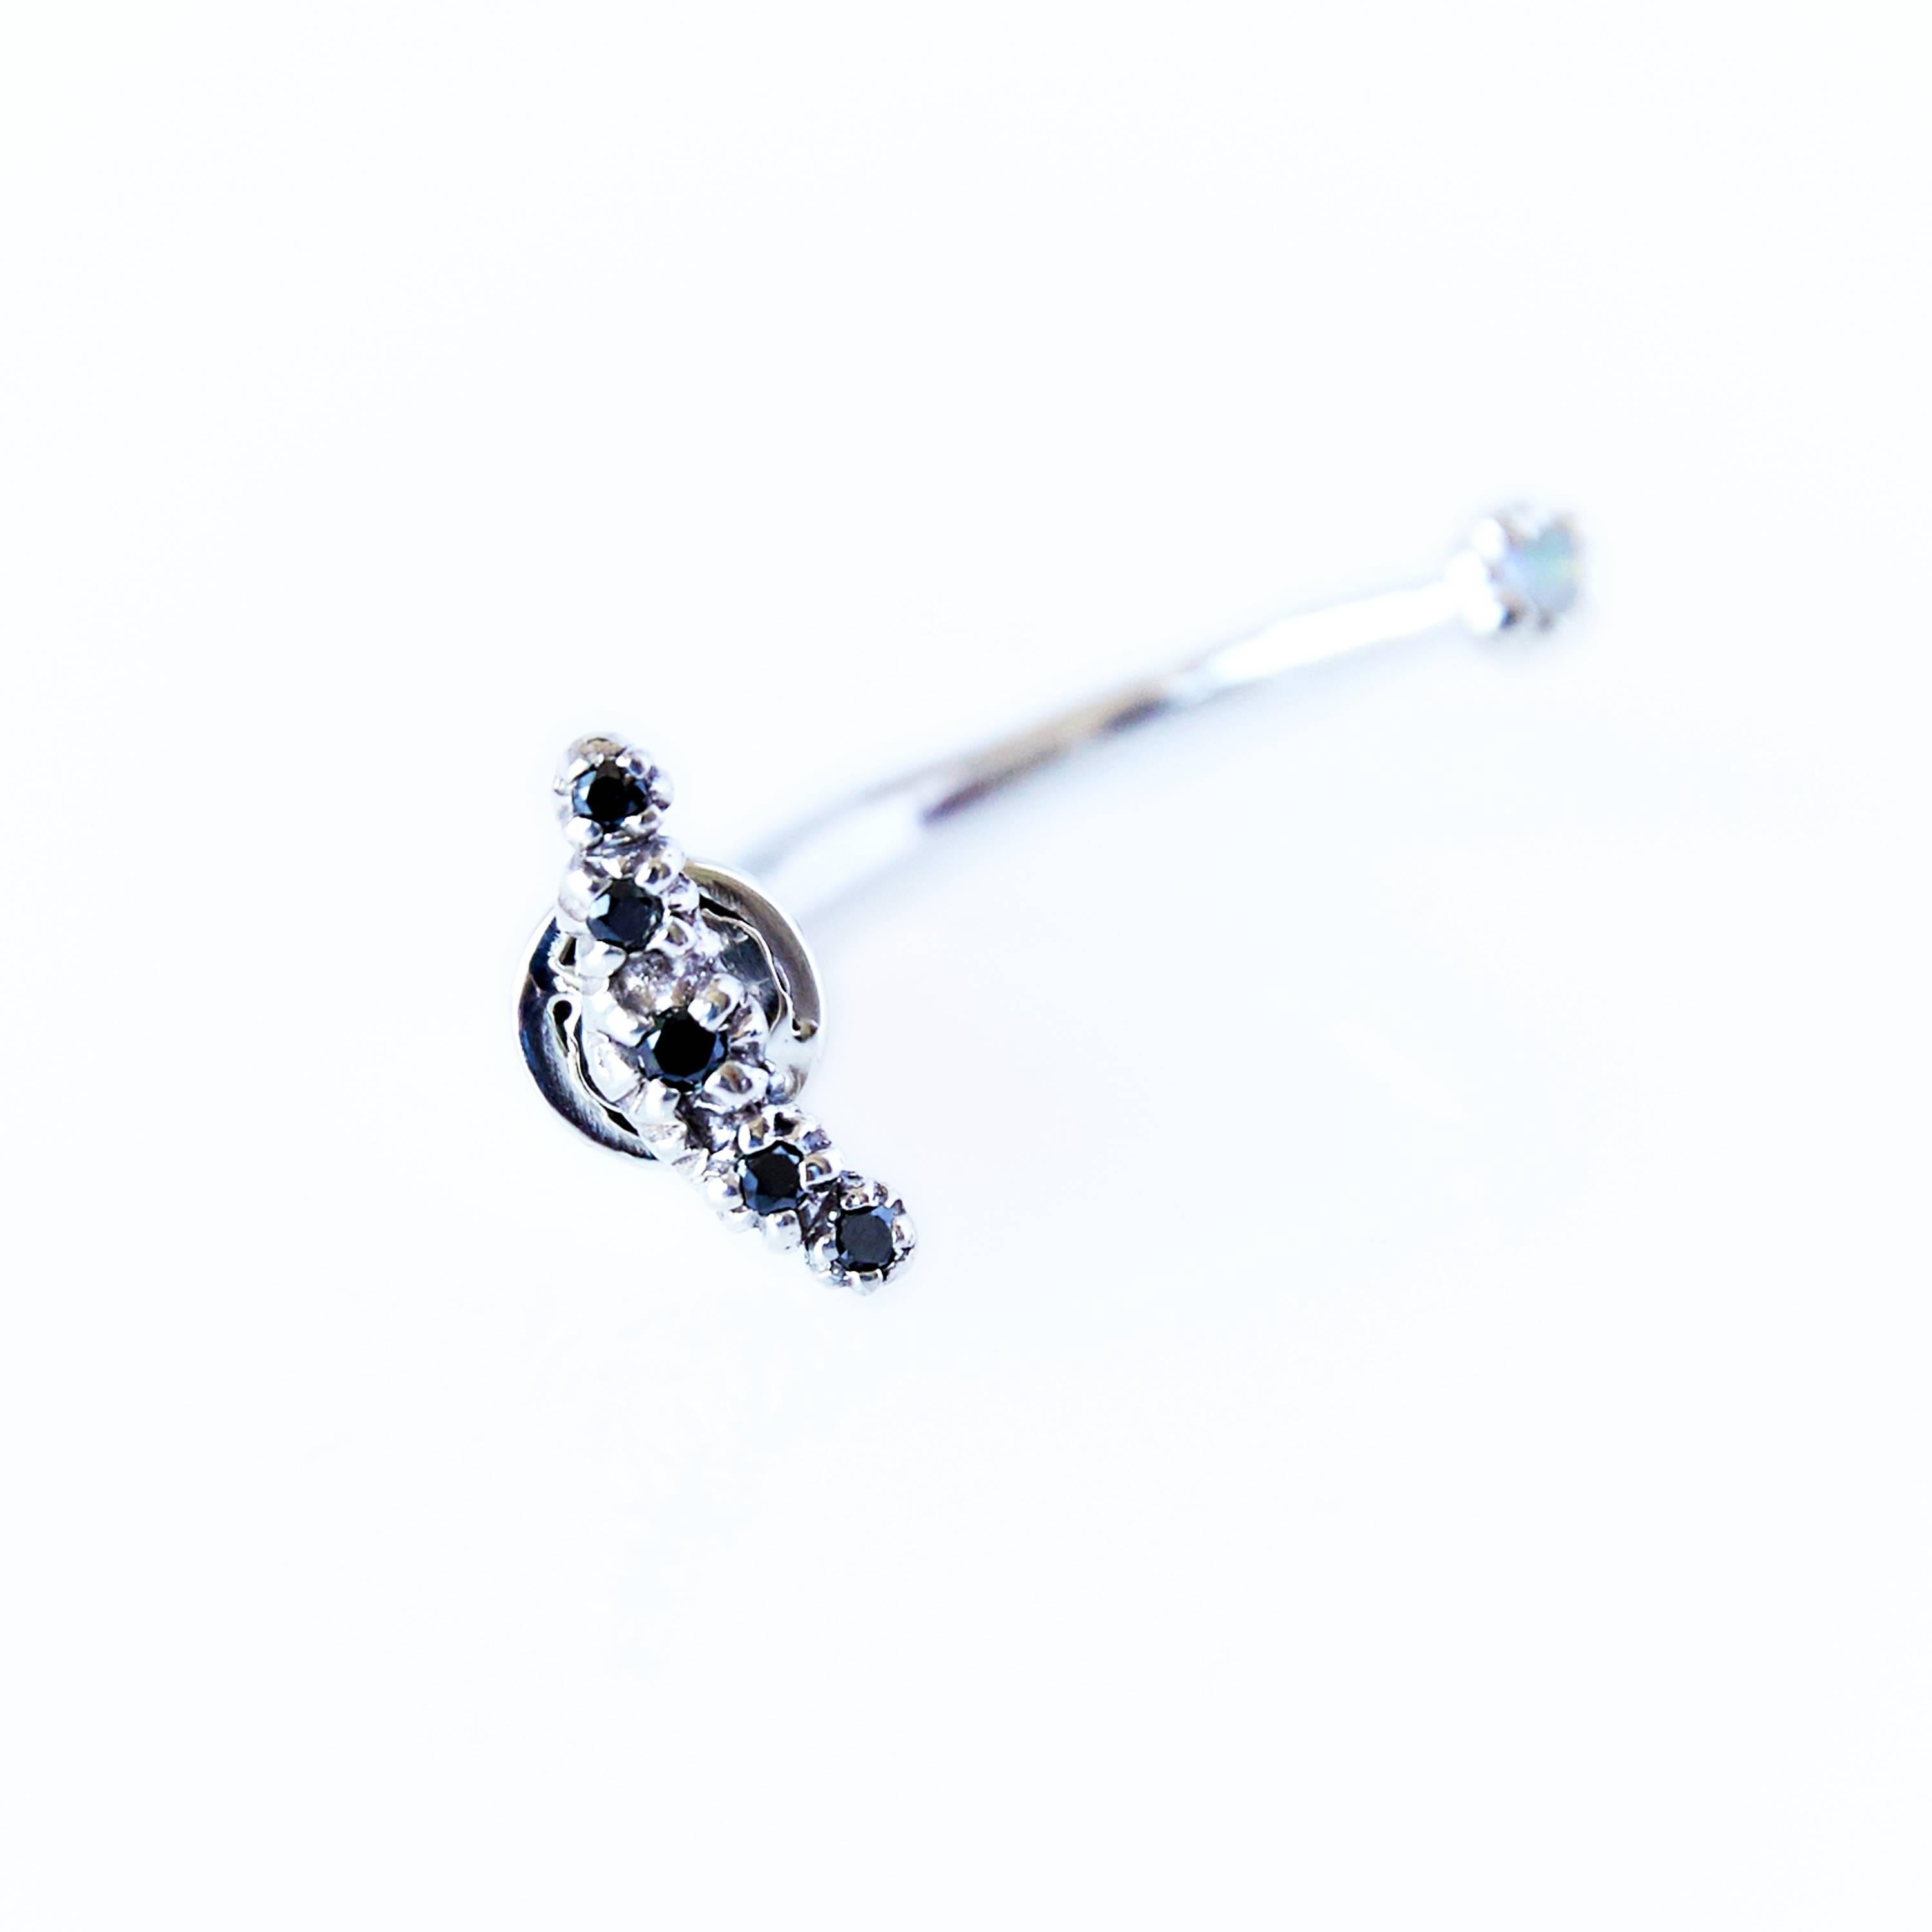 Schwarzer Diamant-Opal-Ohrring Silbermond J DAUPHIN
Einzelner Ohrring 